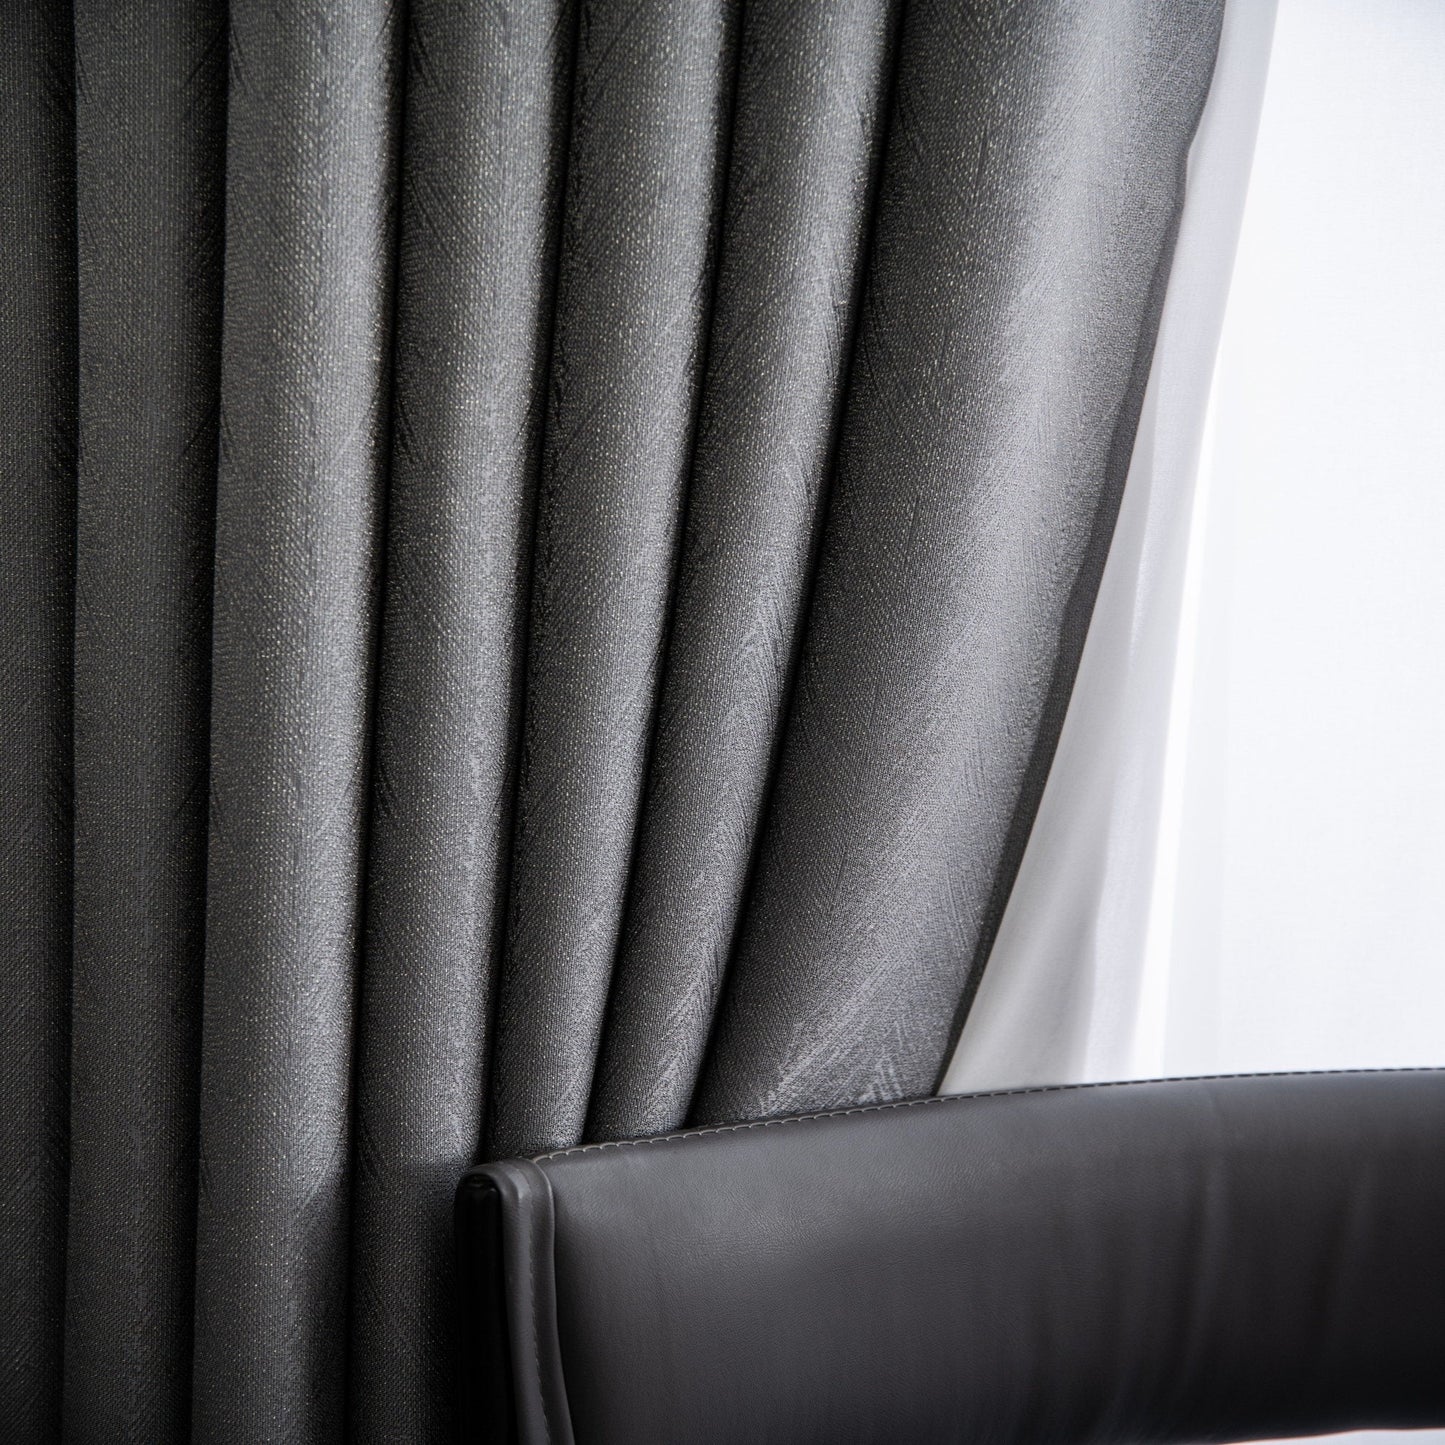 Velvet Curtain | Silver Grey Blackout Curtain | velvet curtain panels | Curtain Panels | Custom Curtains